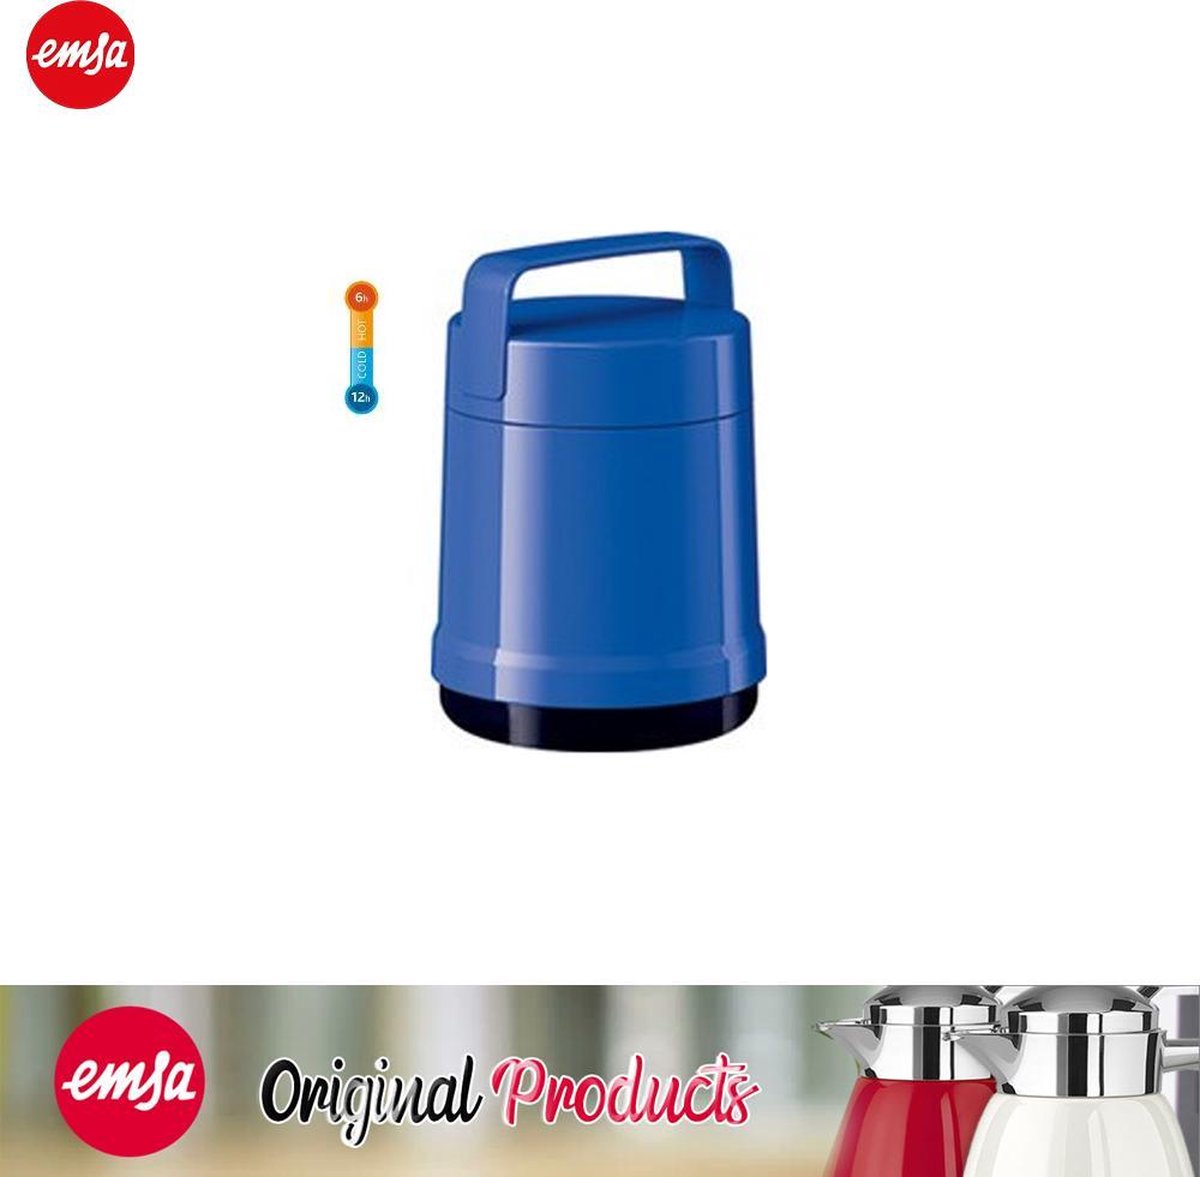 emsa geïsoleerde voedselcontainer ROCKET, 1,0 liter, blauw